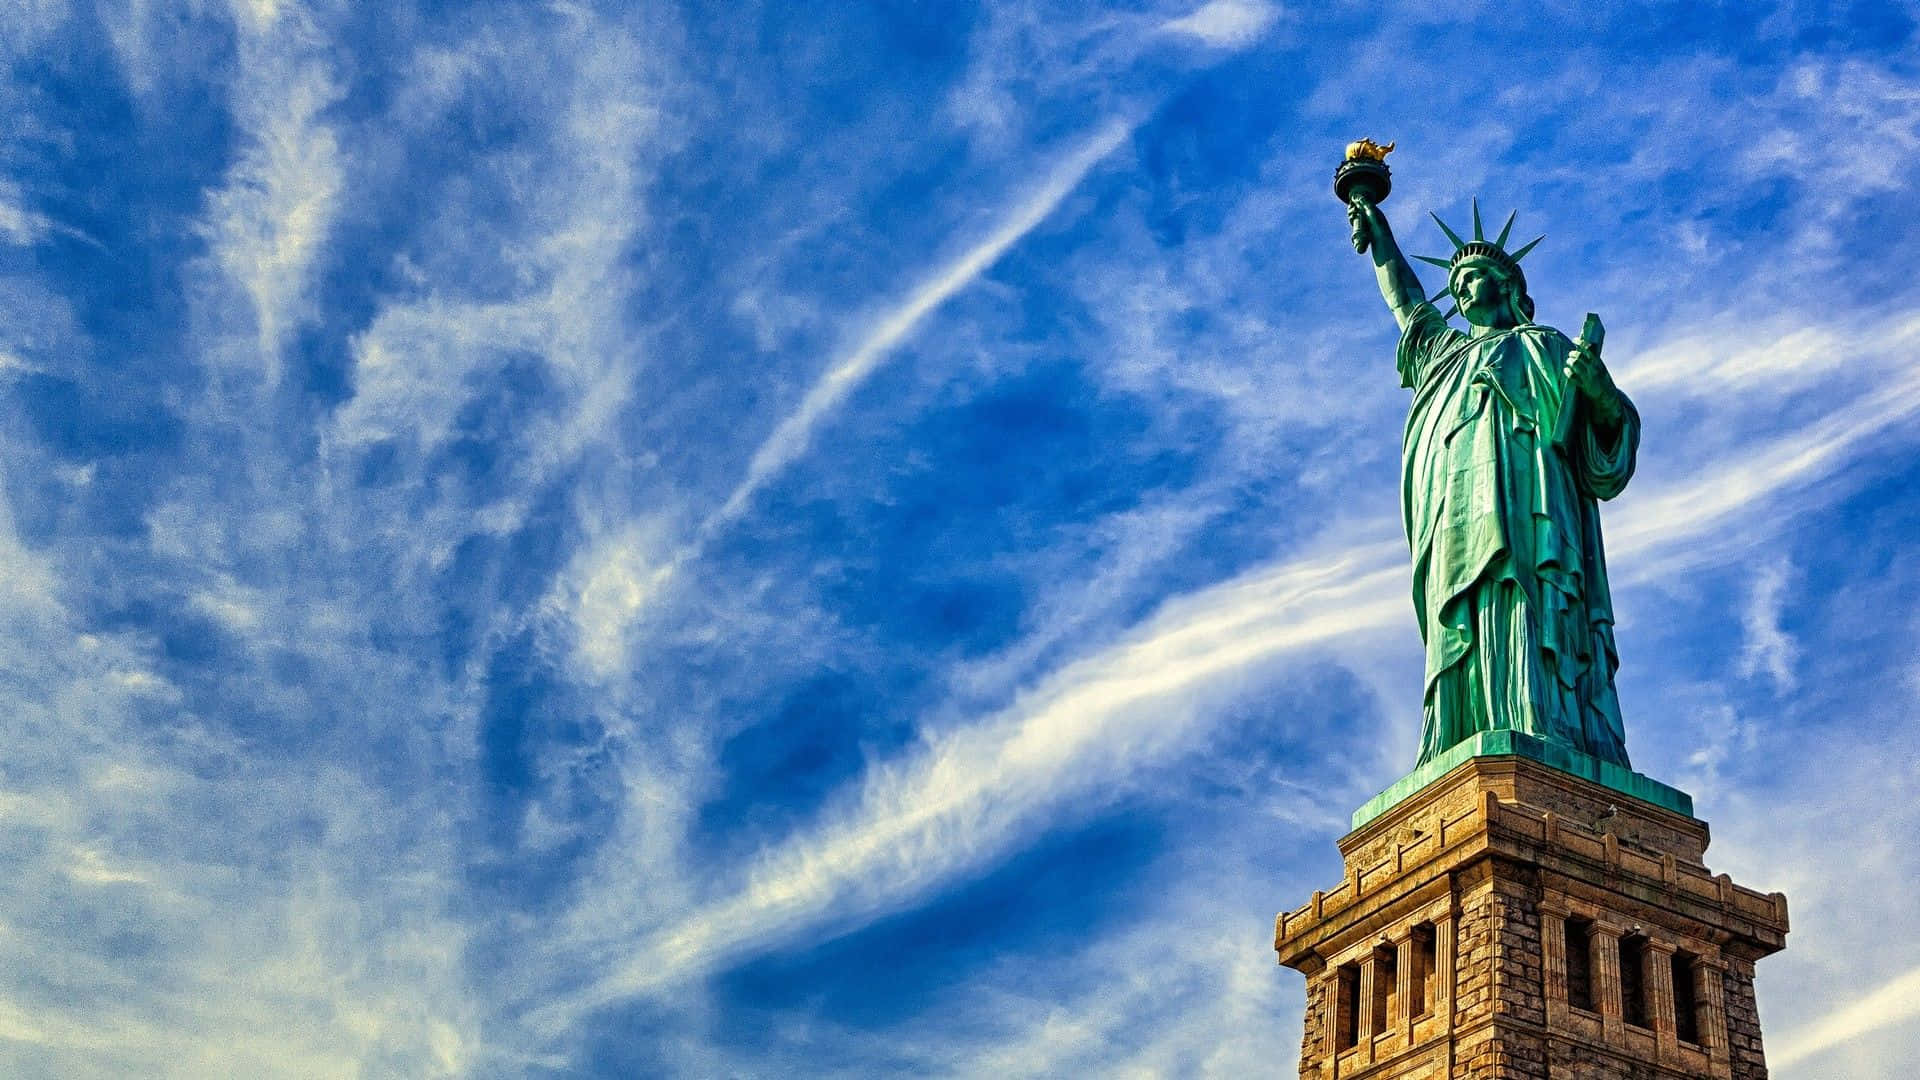 Dieikonische Freiheitsstatue Steht Stolz In New York.